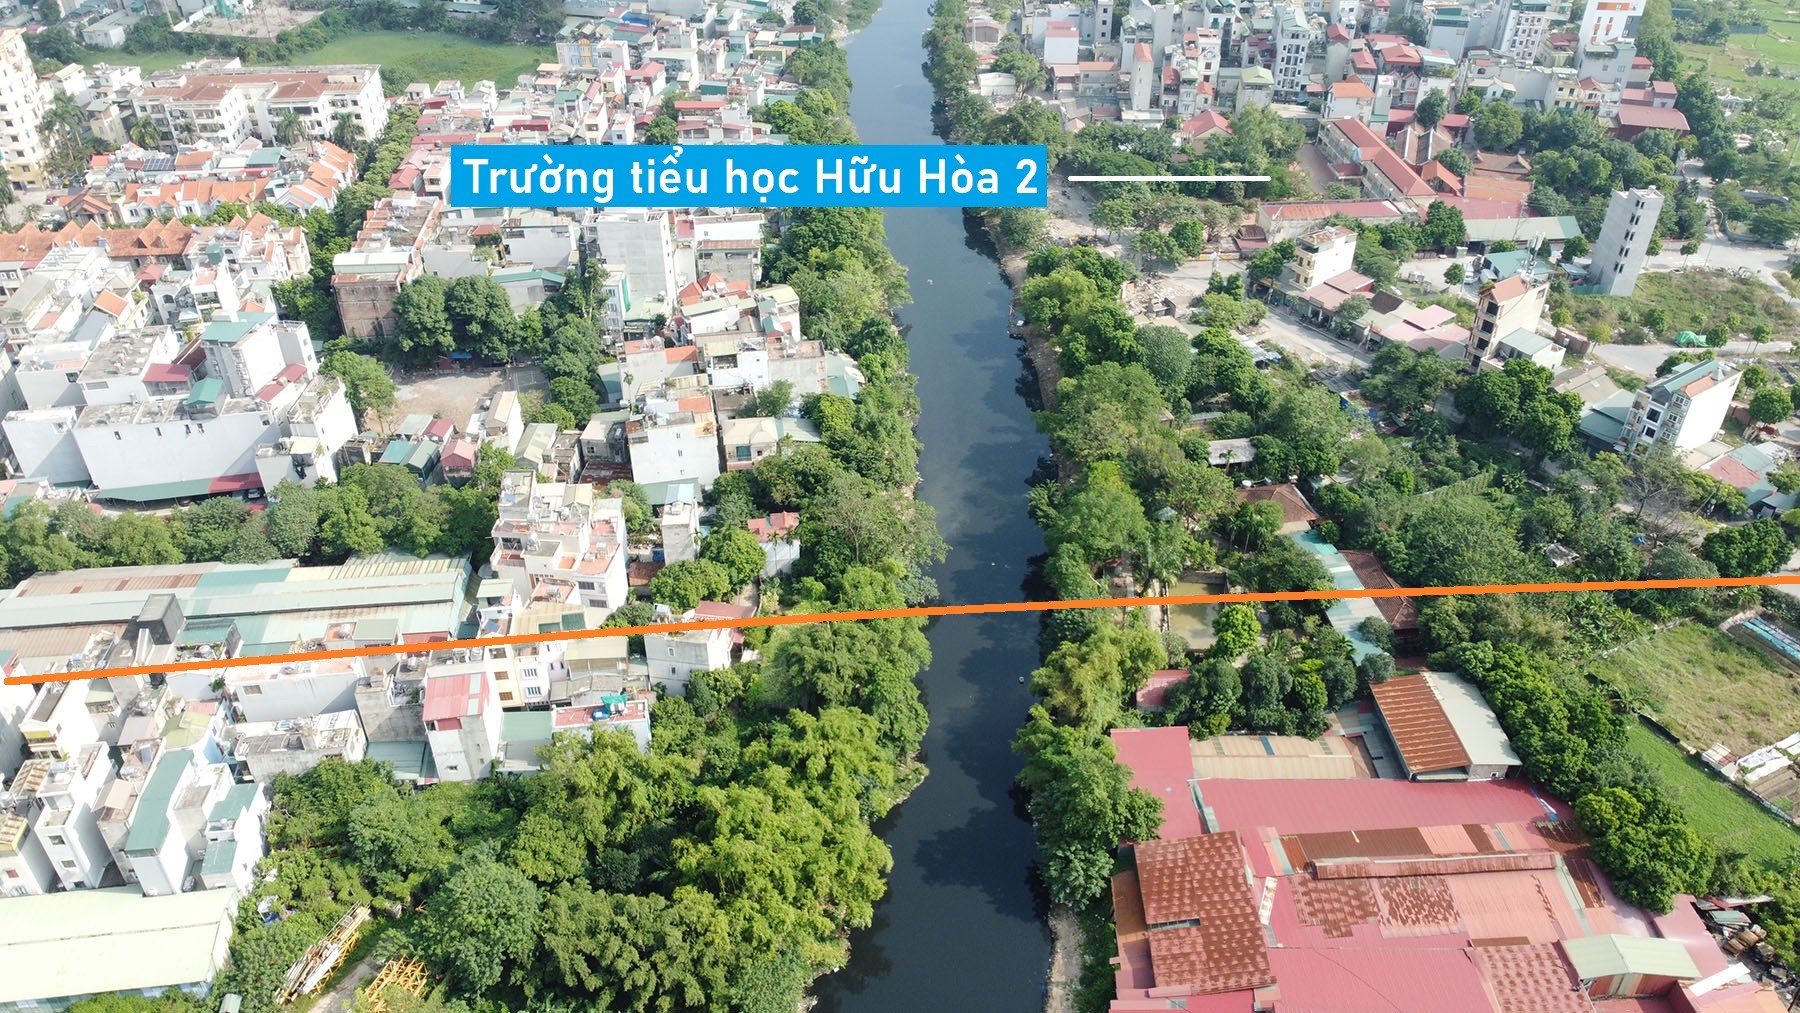 Toàn cảnh vị trí quy hoạch cầu vượt sông Nhuệ trên trục nối đường 70 với Vành đai 3,5 ở huyện Thanh Trì, Hà Nội